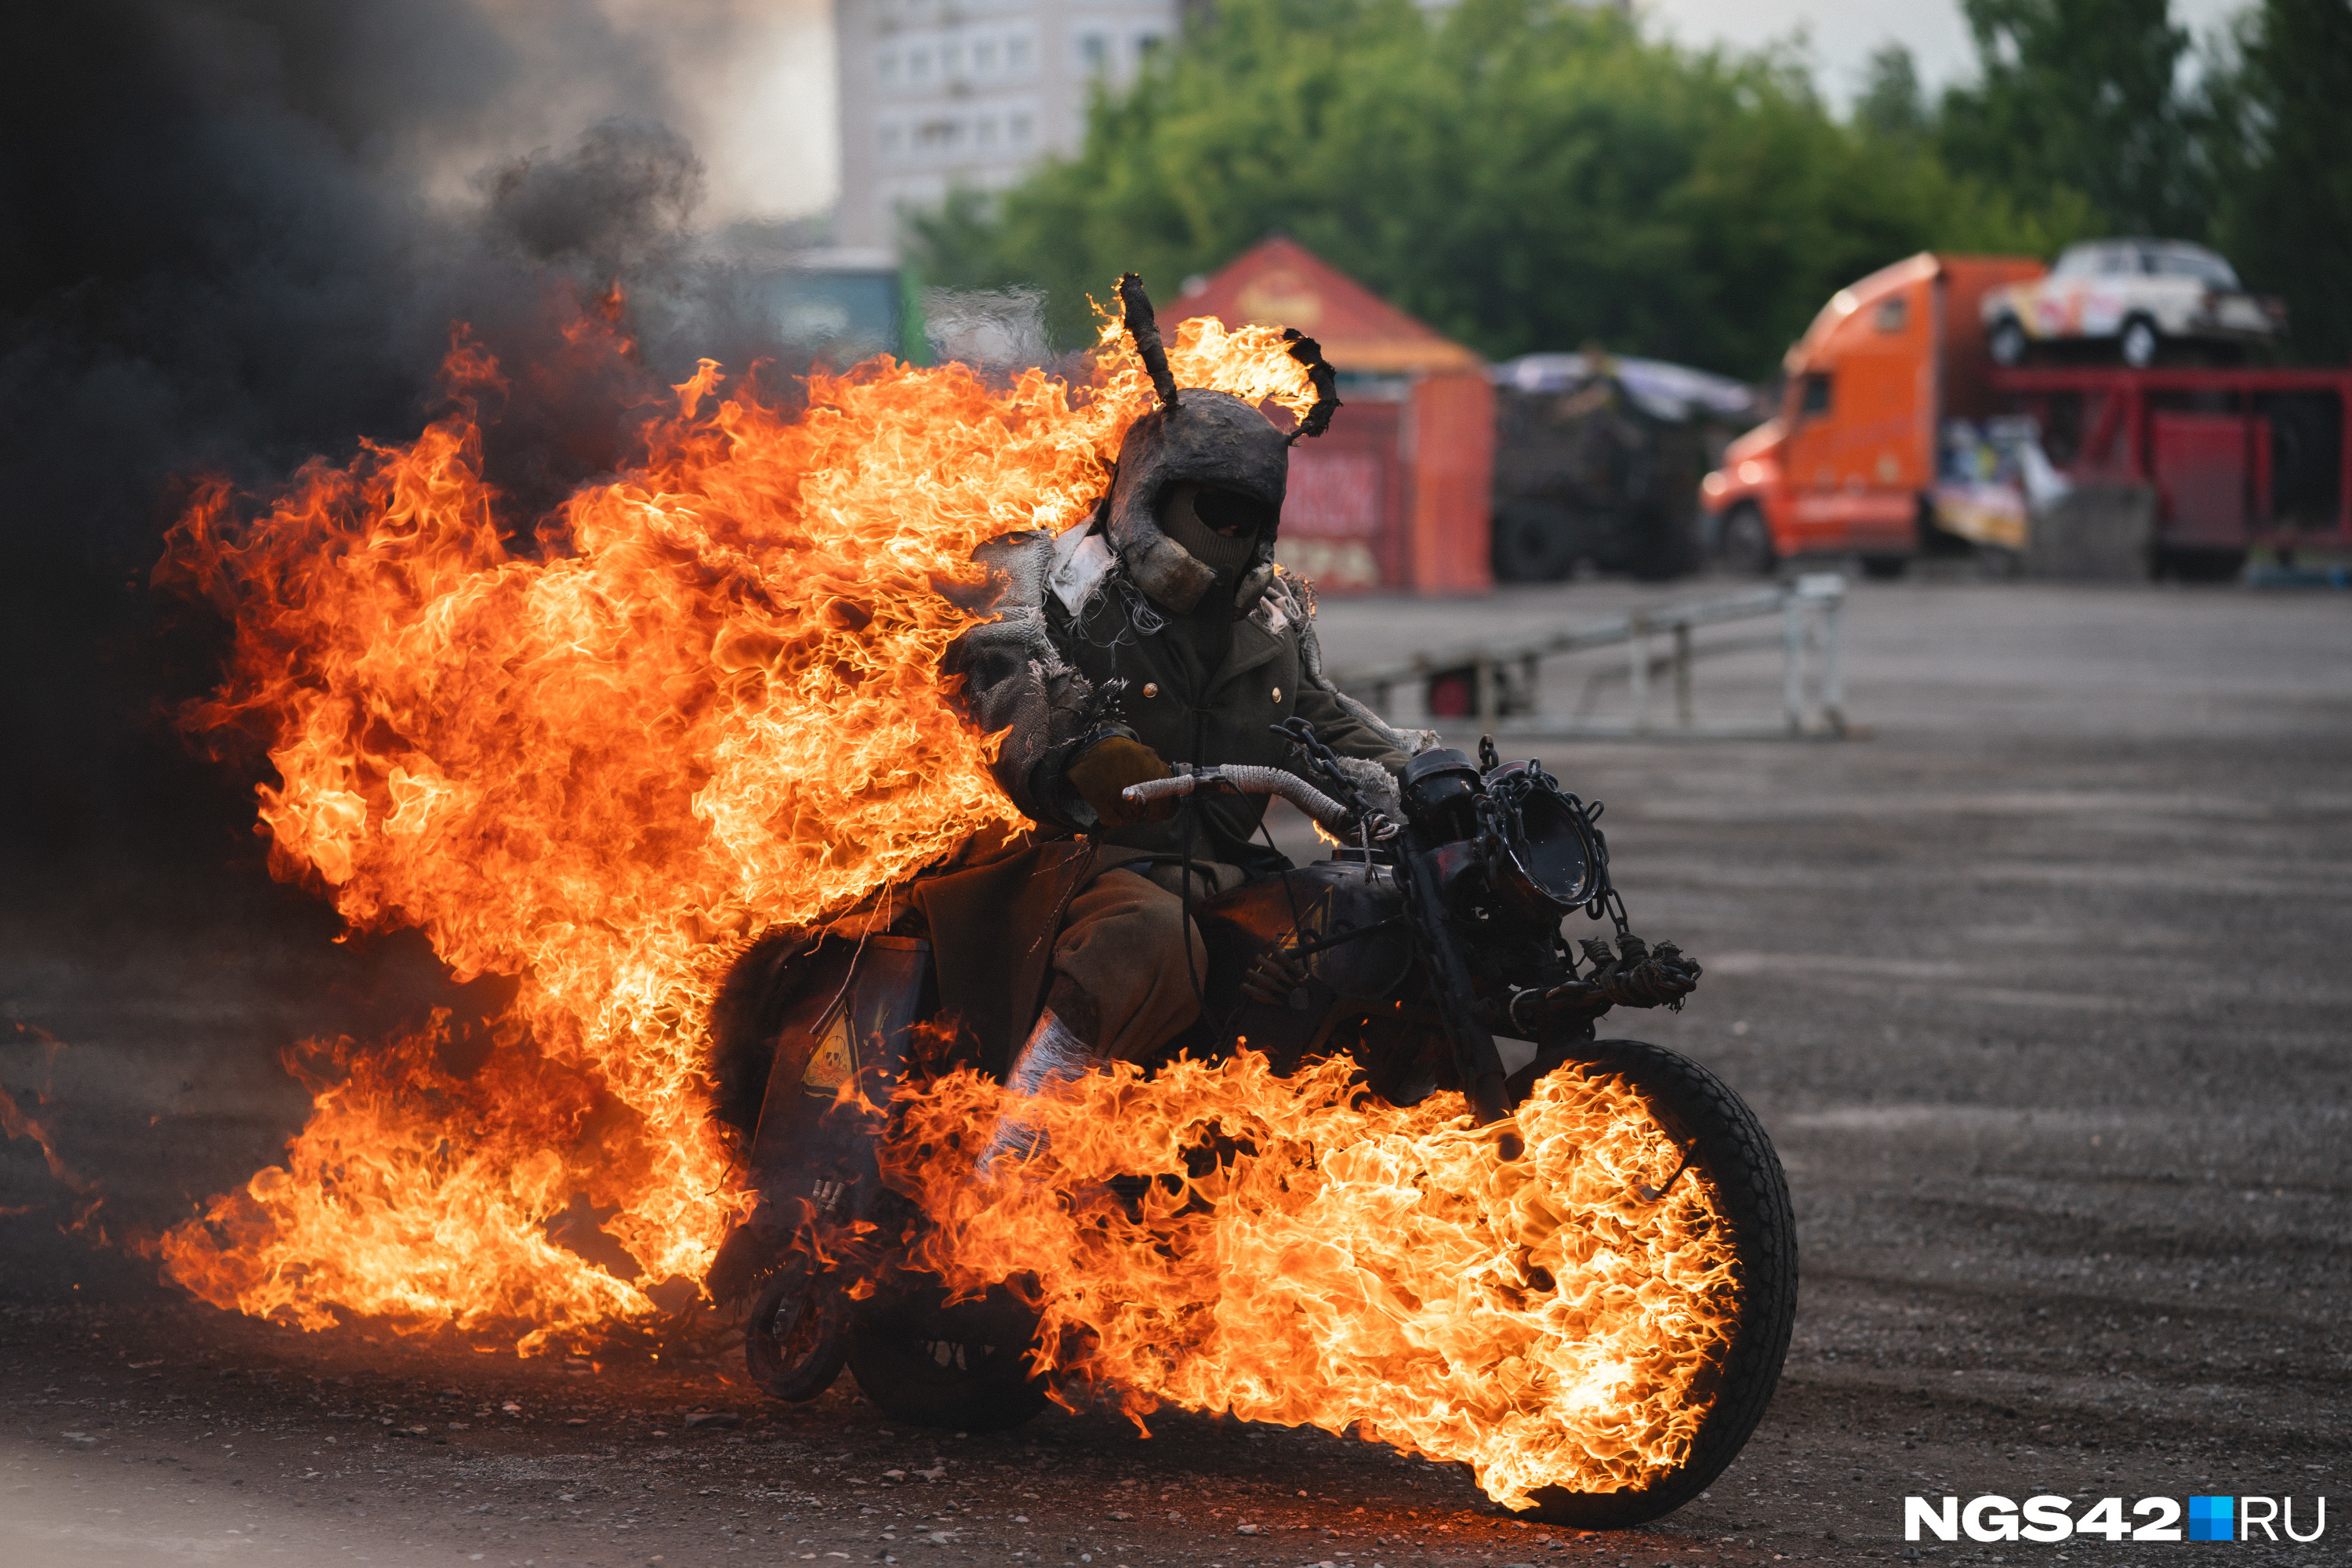 С огнем, стрельбой и крутыми тачками: фоторепортаж с шоу каскадеров в Кемерове